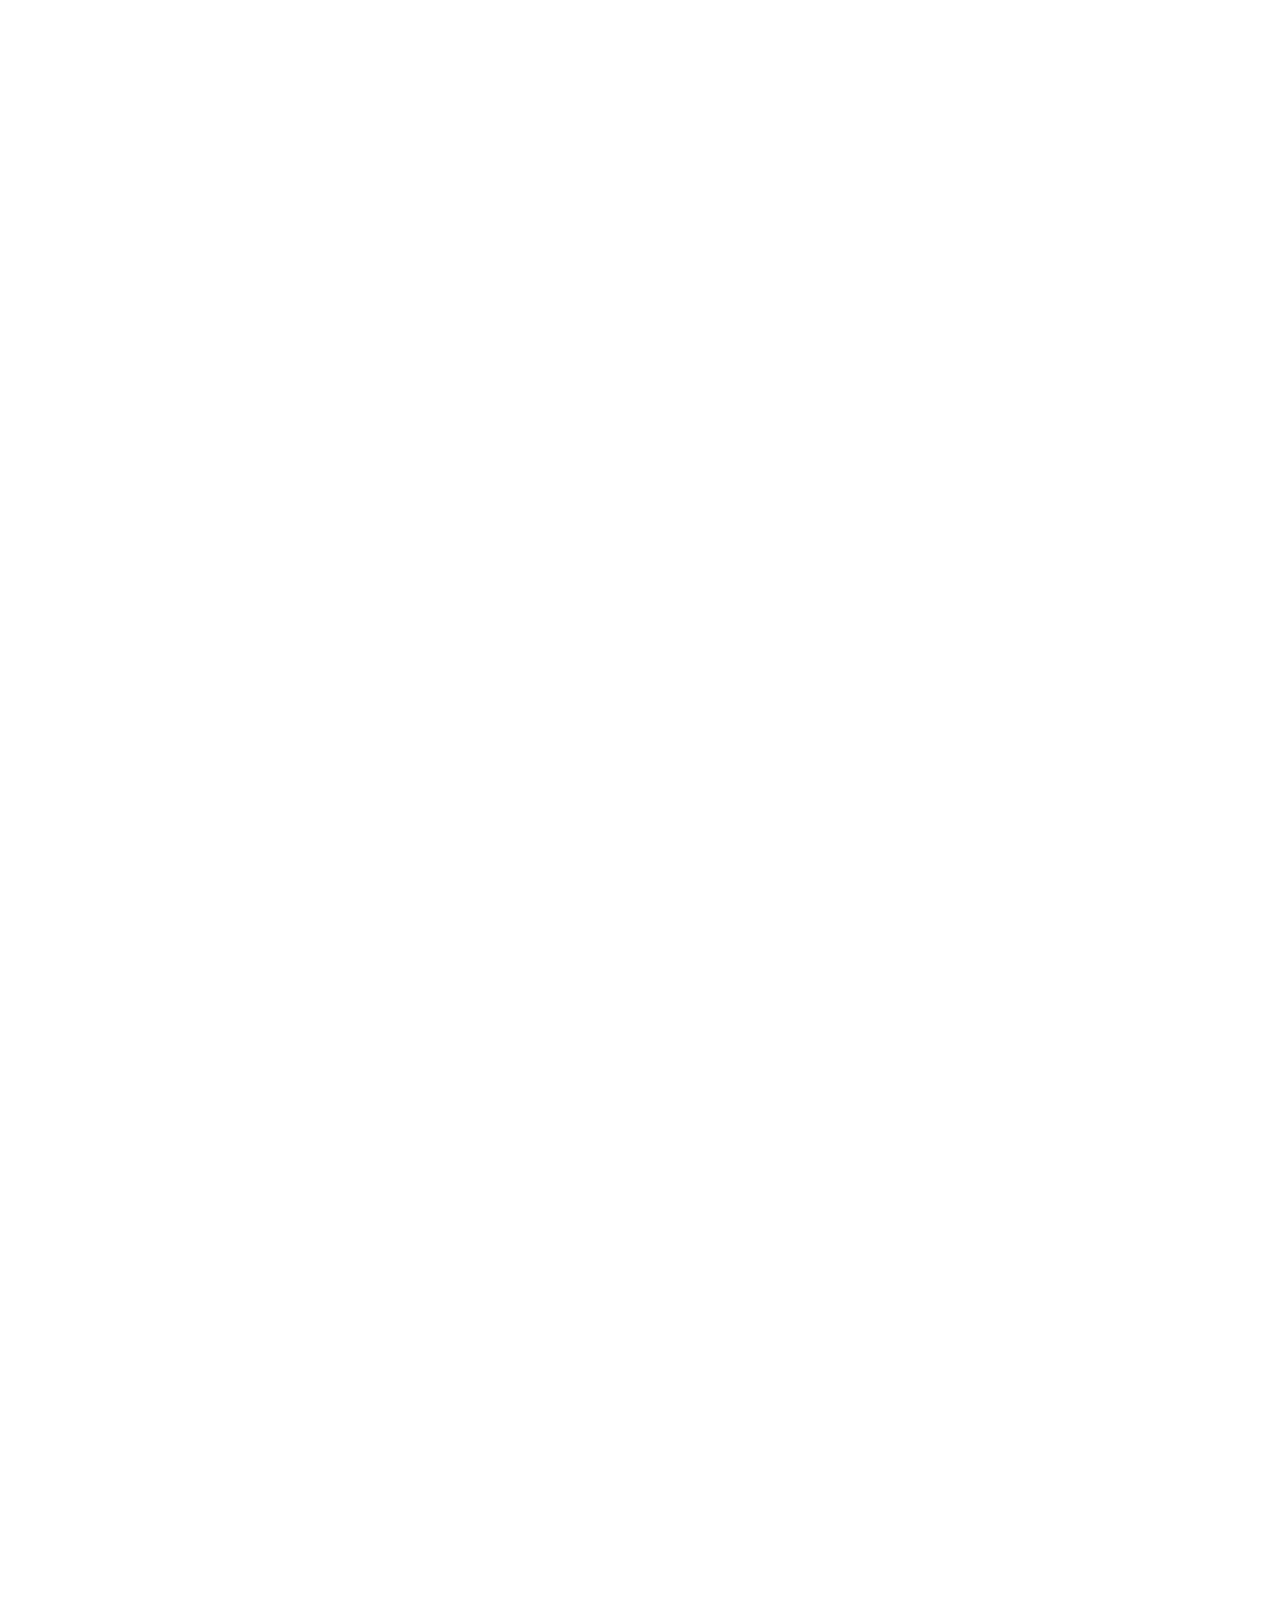 India 1